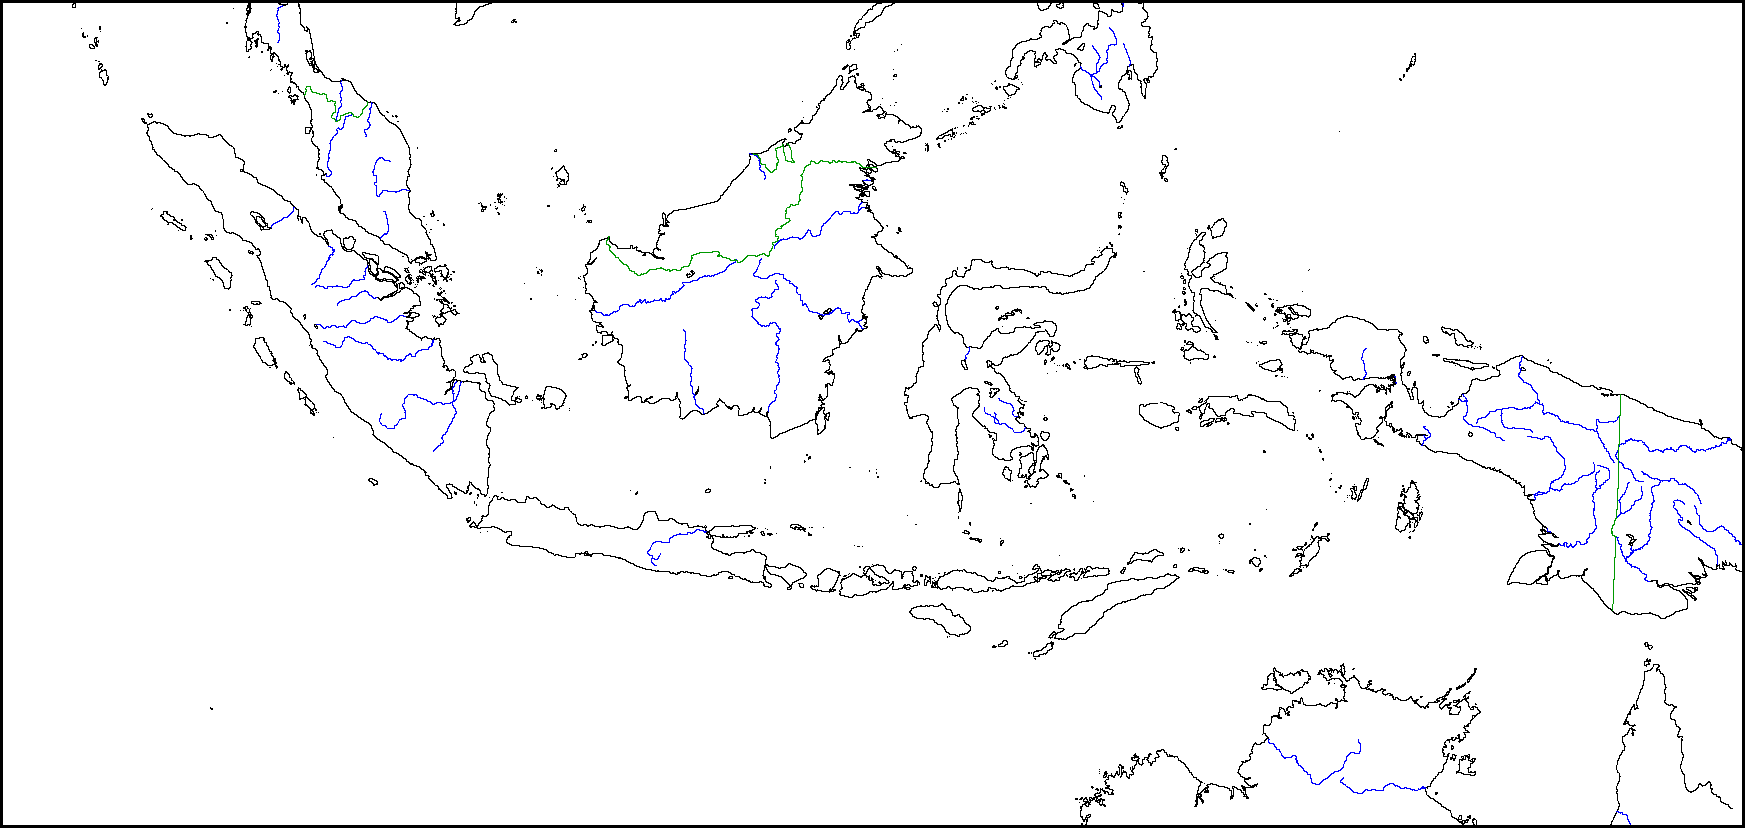 35+ Ide Peta Indonesia Sketsa Hd - Nation Wides